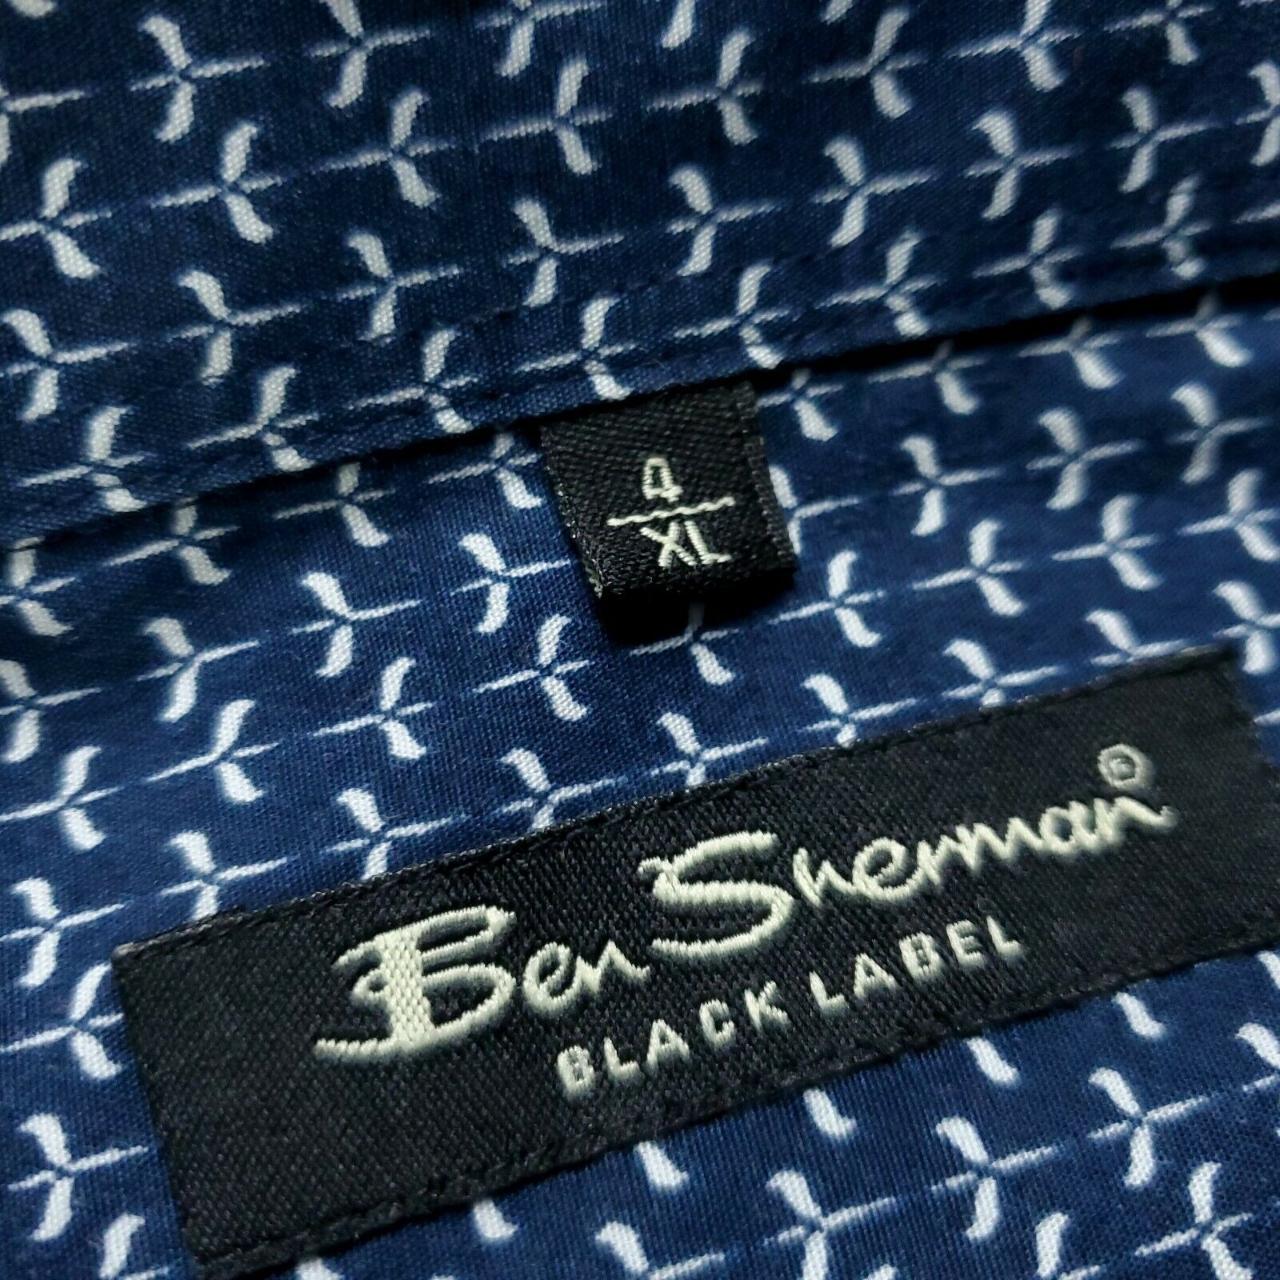 Ben Sherman Black Label Button Shirt Mens Size... - Depop